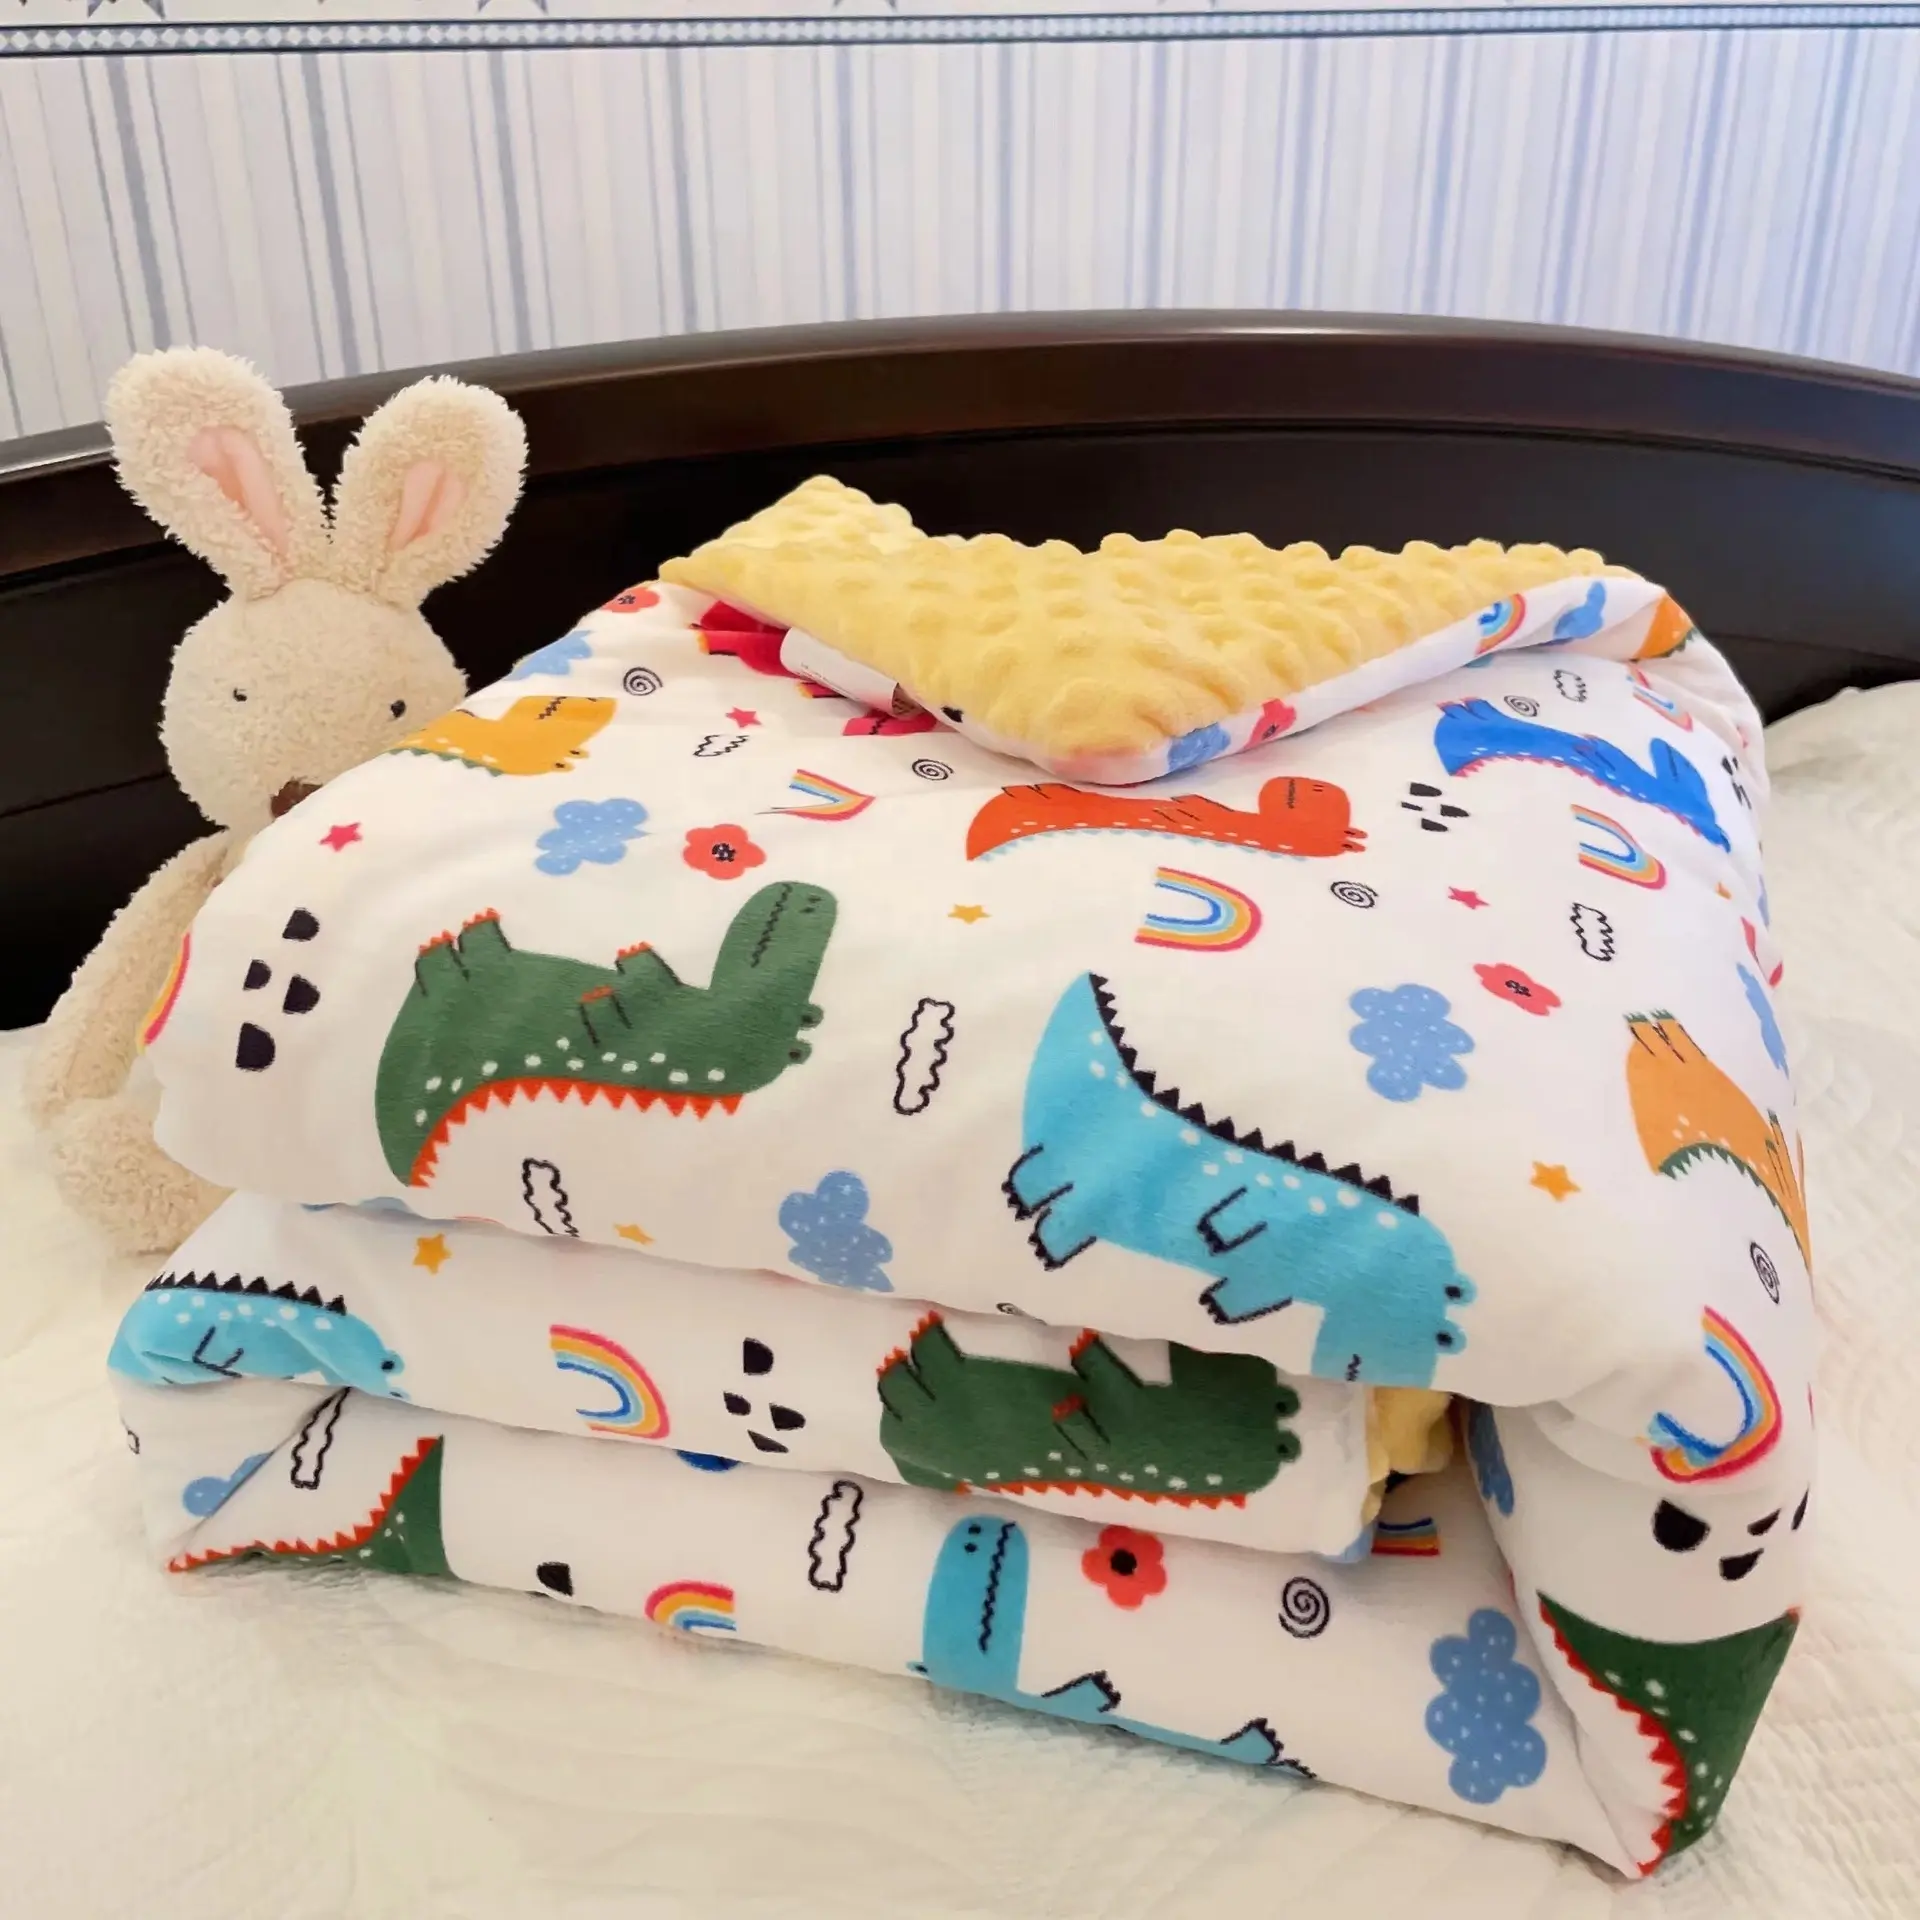 नए डिजाइन बच्चों के कंडीशनिंग कंबल शरद ऋतु और सर्दियों के कपास क्लिप को पतला करने के लिए नवजात शिशु कंबल